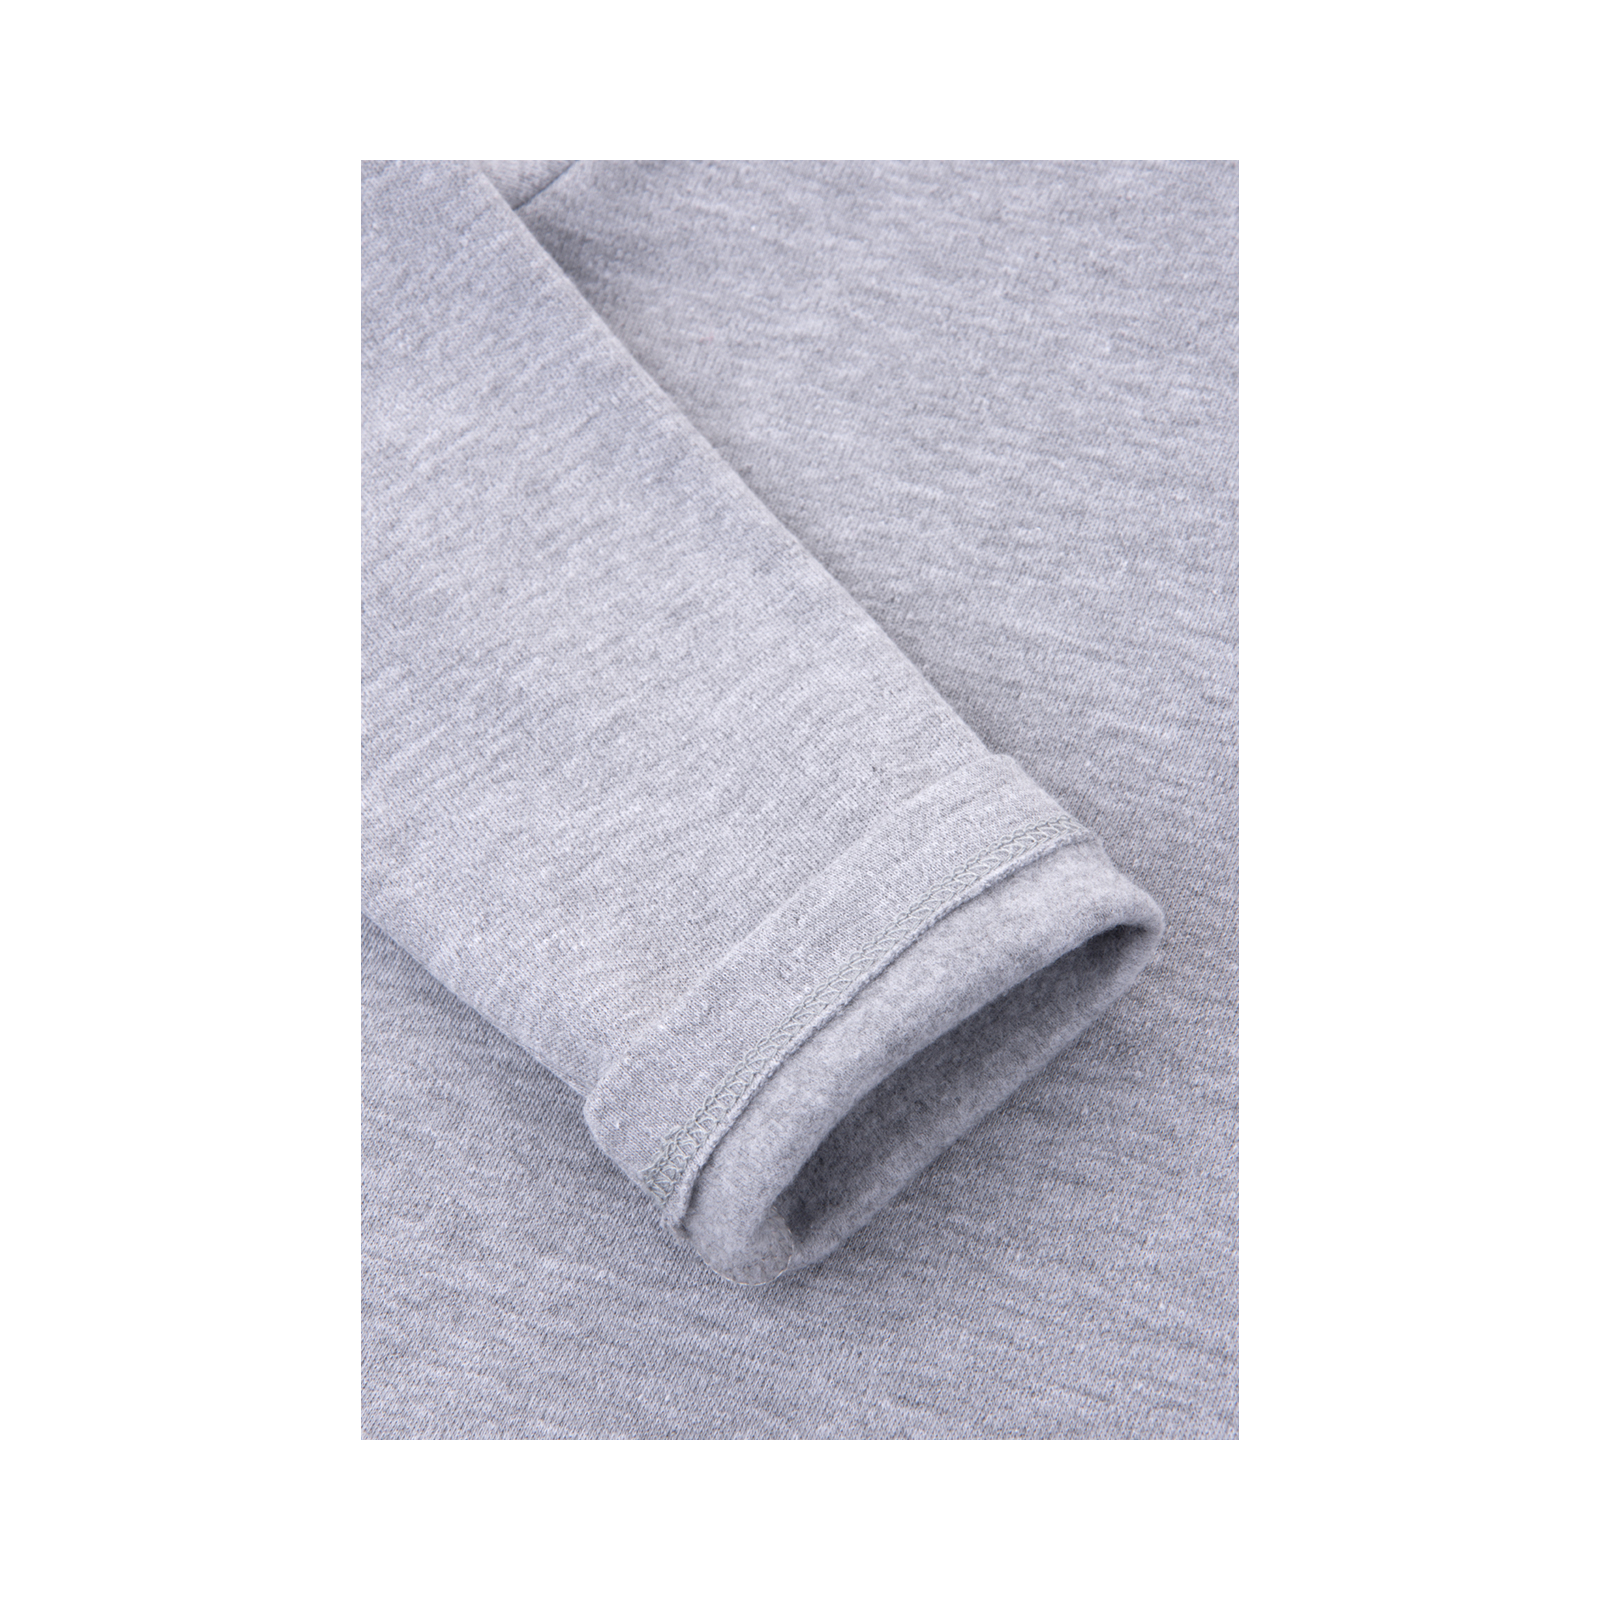 Кофта Lovetti водолазка серая меланжевая (1013-134-gray) зображення 4